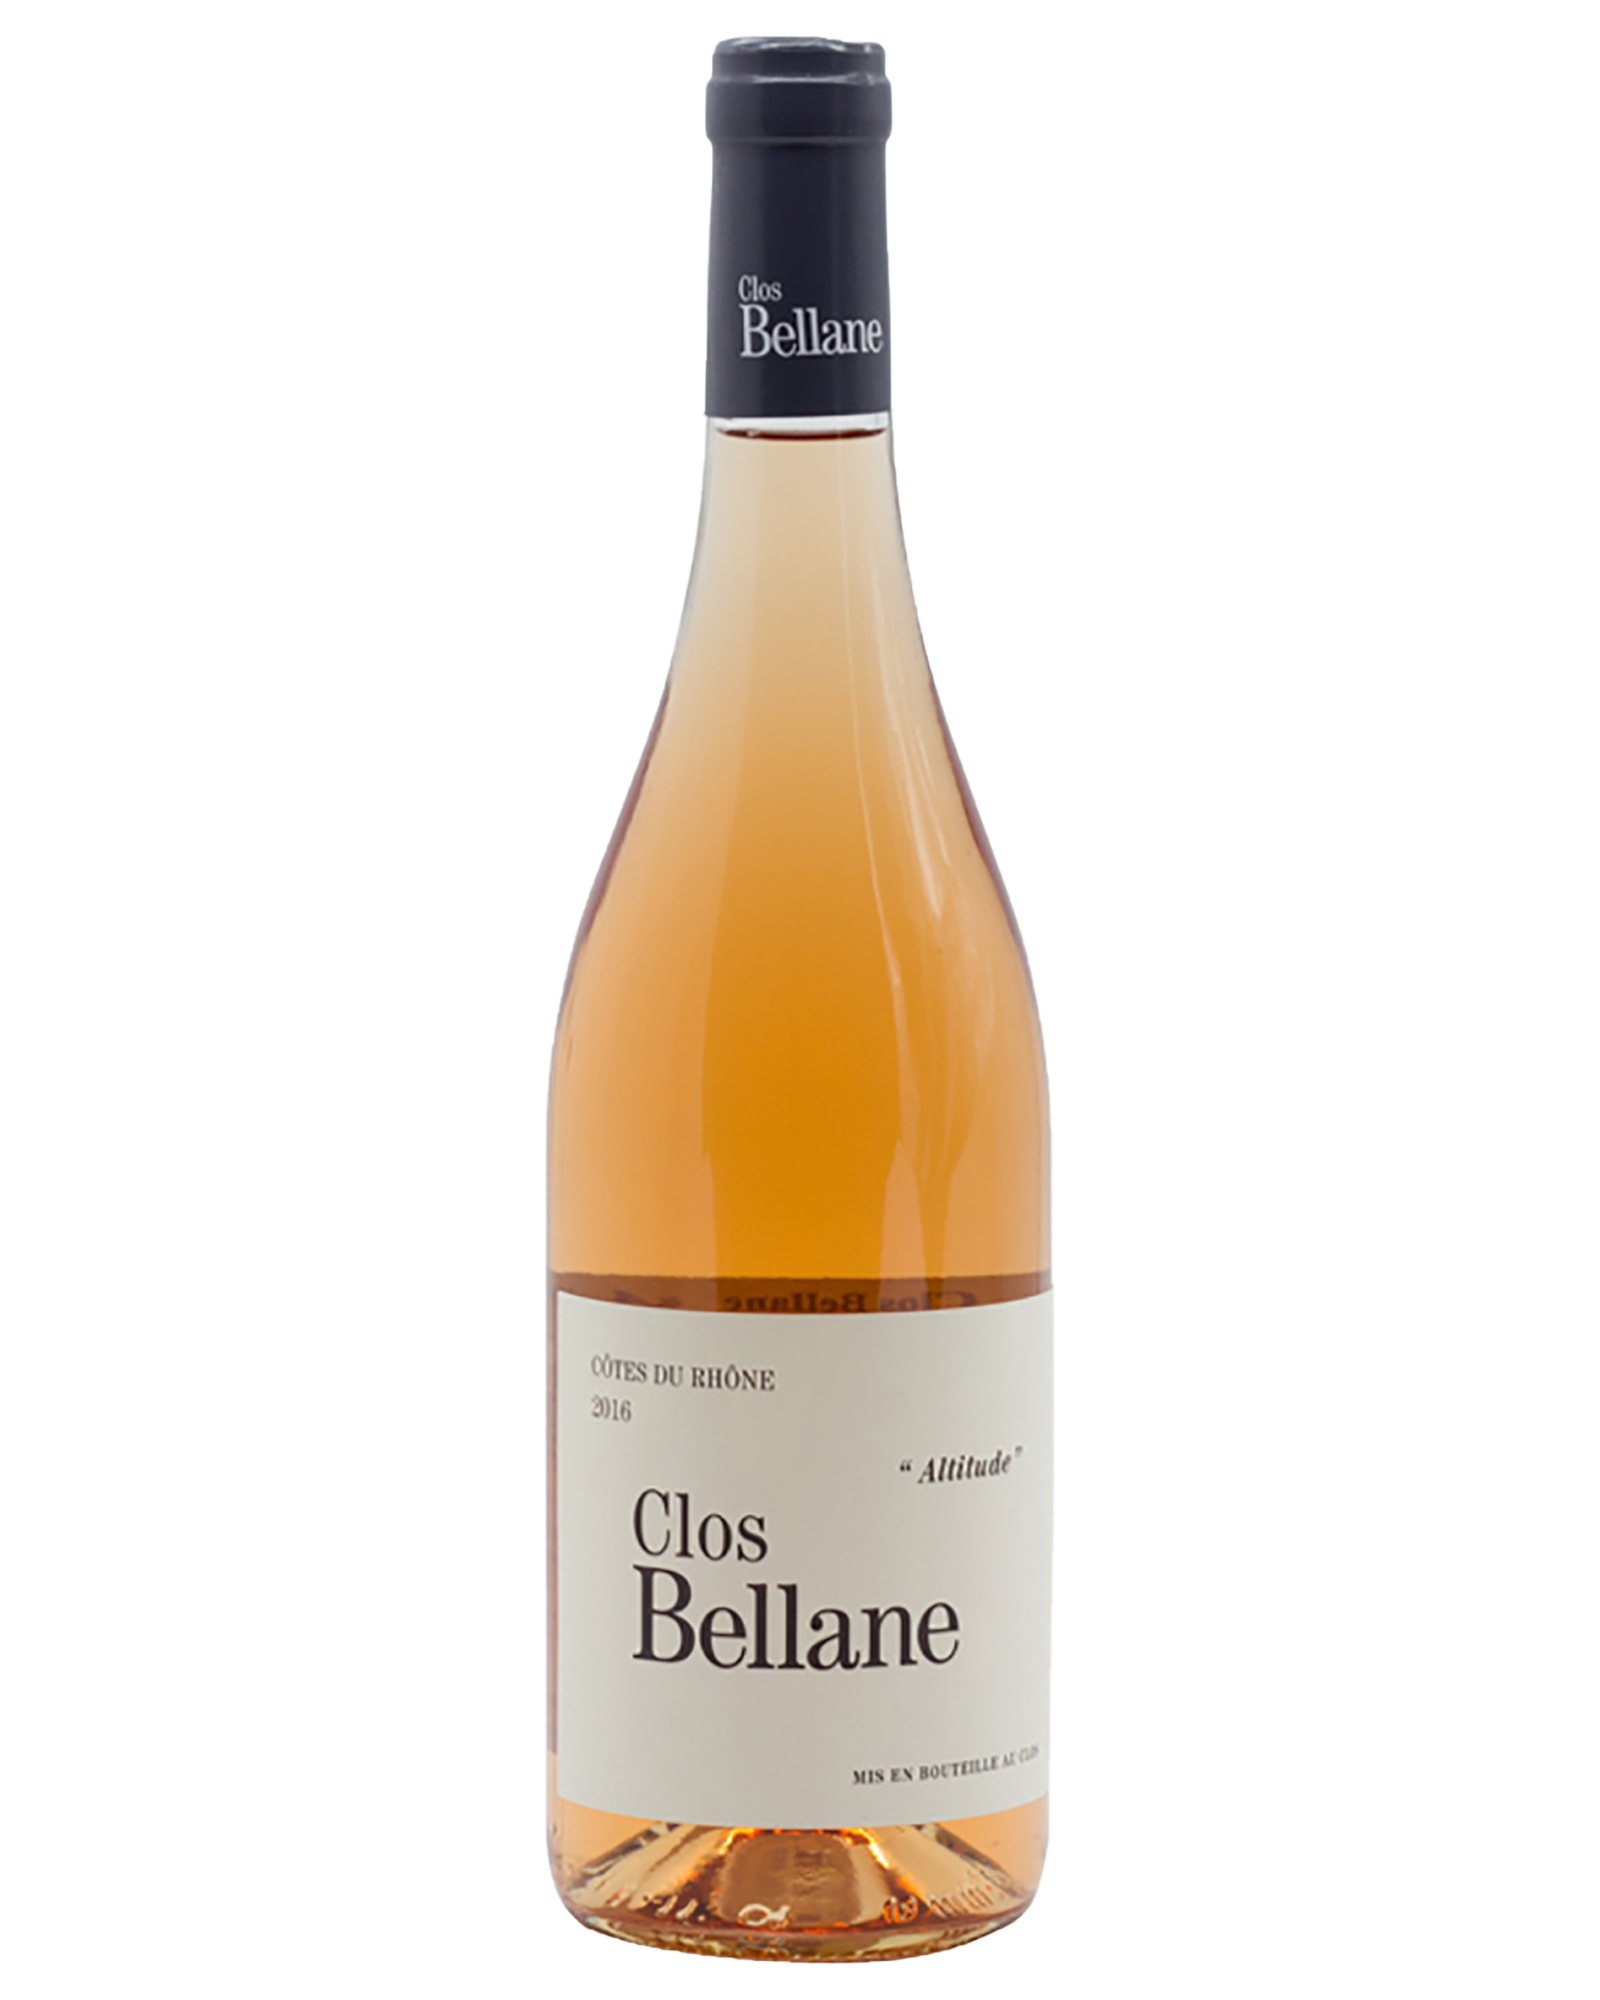 Clos Bellane Cotes du Rhone Altitude Rosé 2016